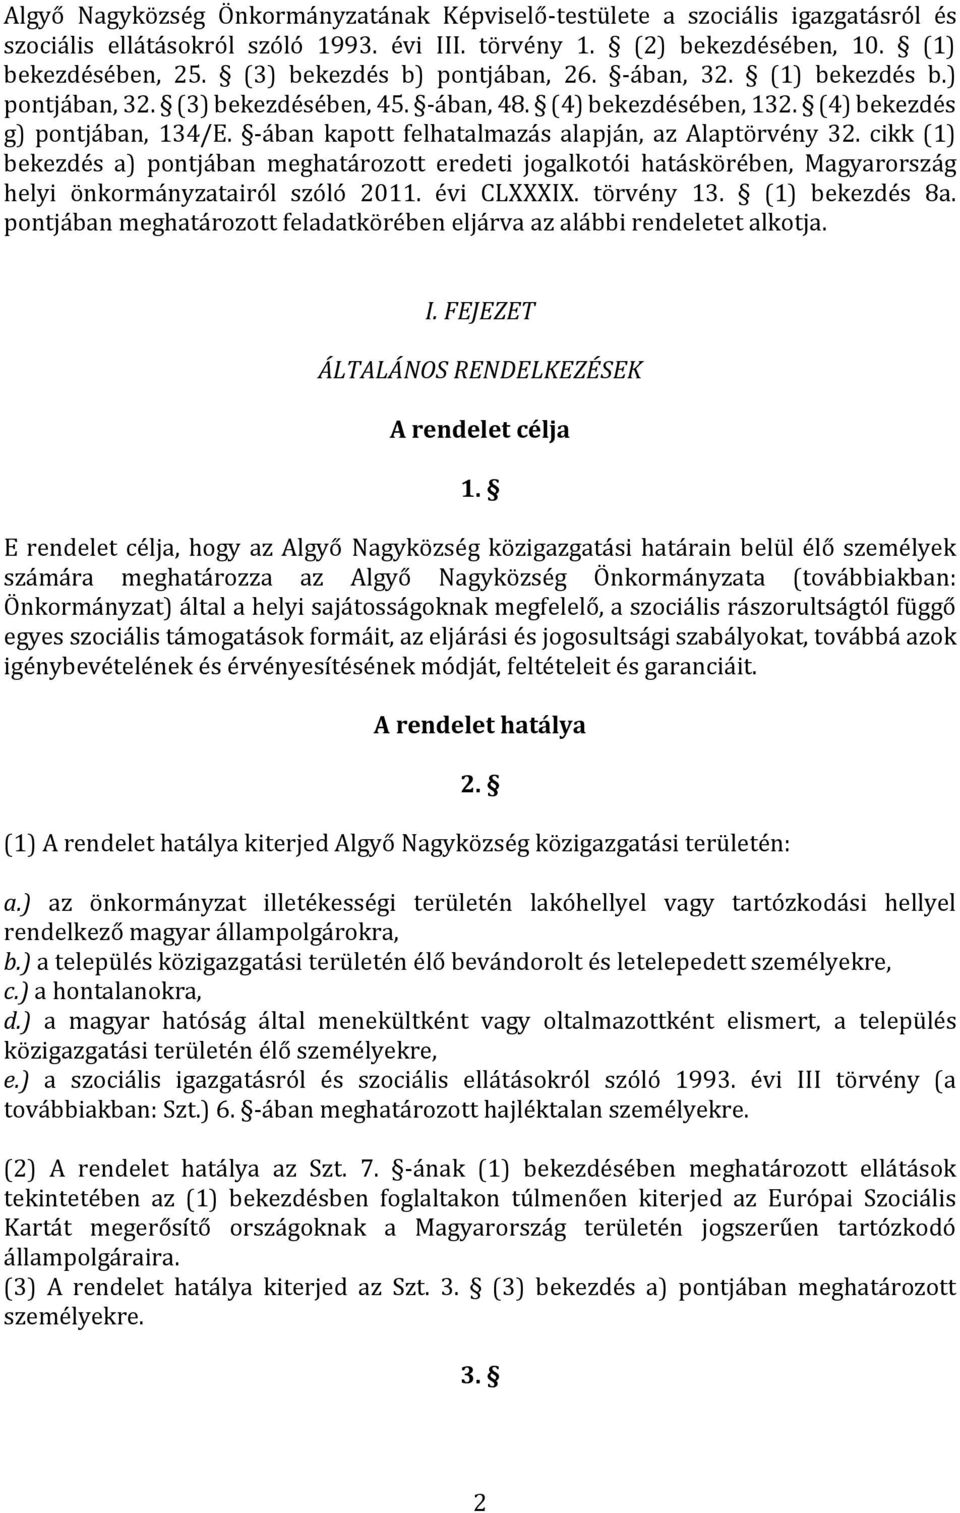 -ában kapott felhatalmazás alapján, az Alaptörvény 32. cikk (1) bekezdés a) pontjában meghatározott eredeti jogalkotói hatáskörében, Magyarország helyi önkormányzatairól szóló 2011. évi CLXXXIX.